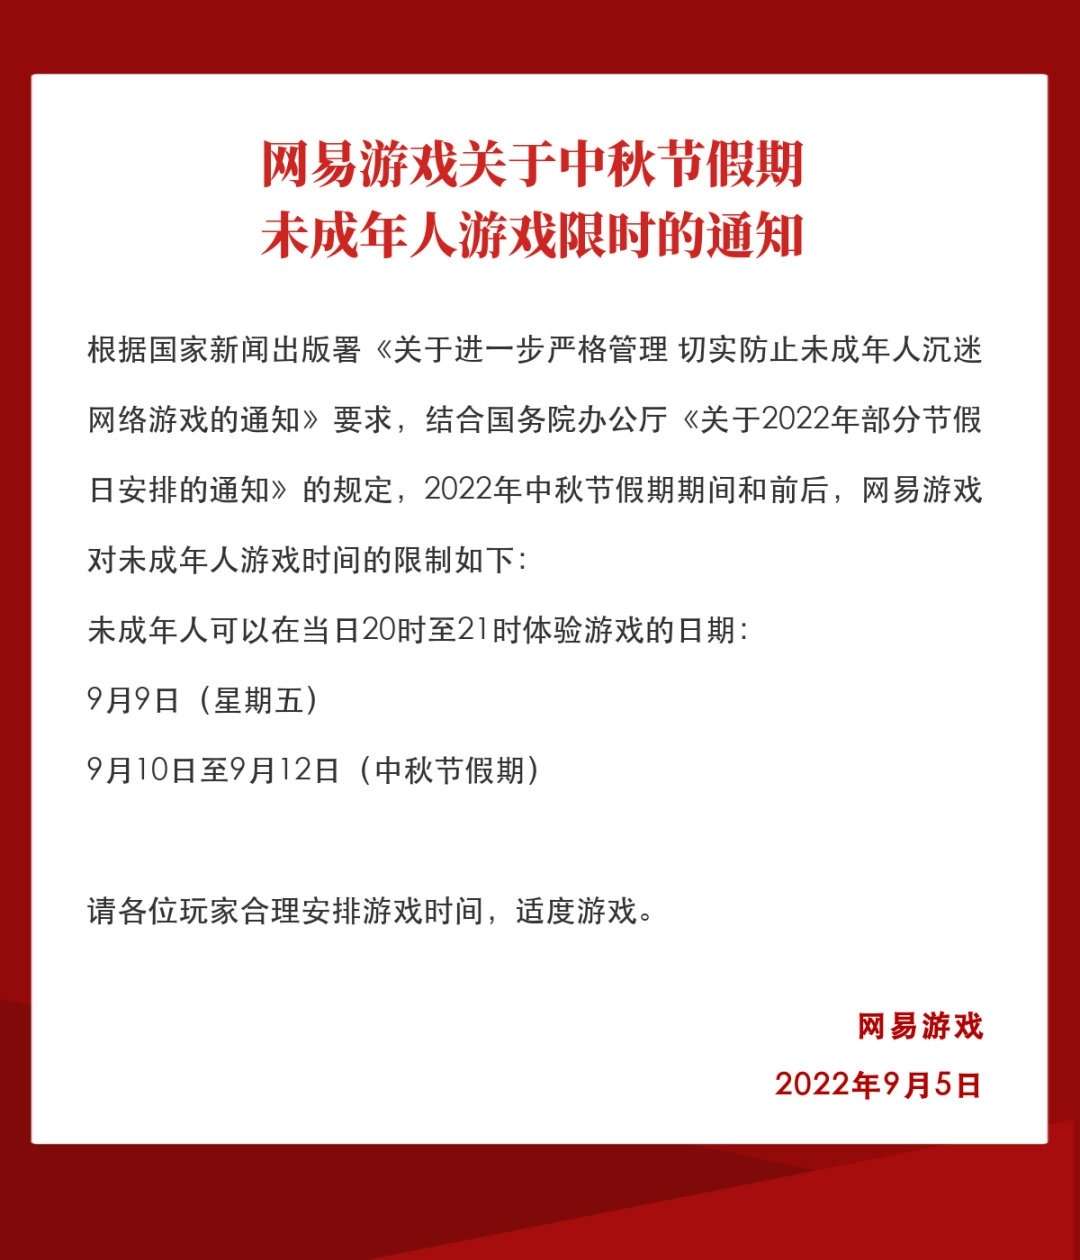 NetEase đưa ra thông báo hạn chế chơi game.